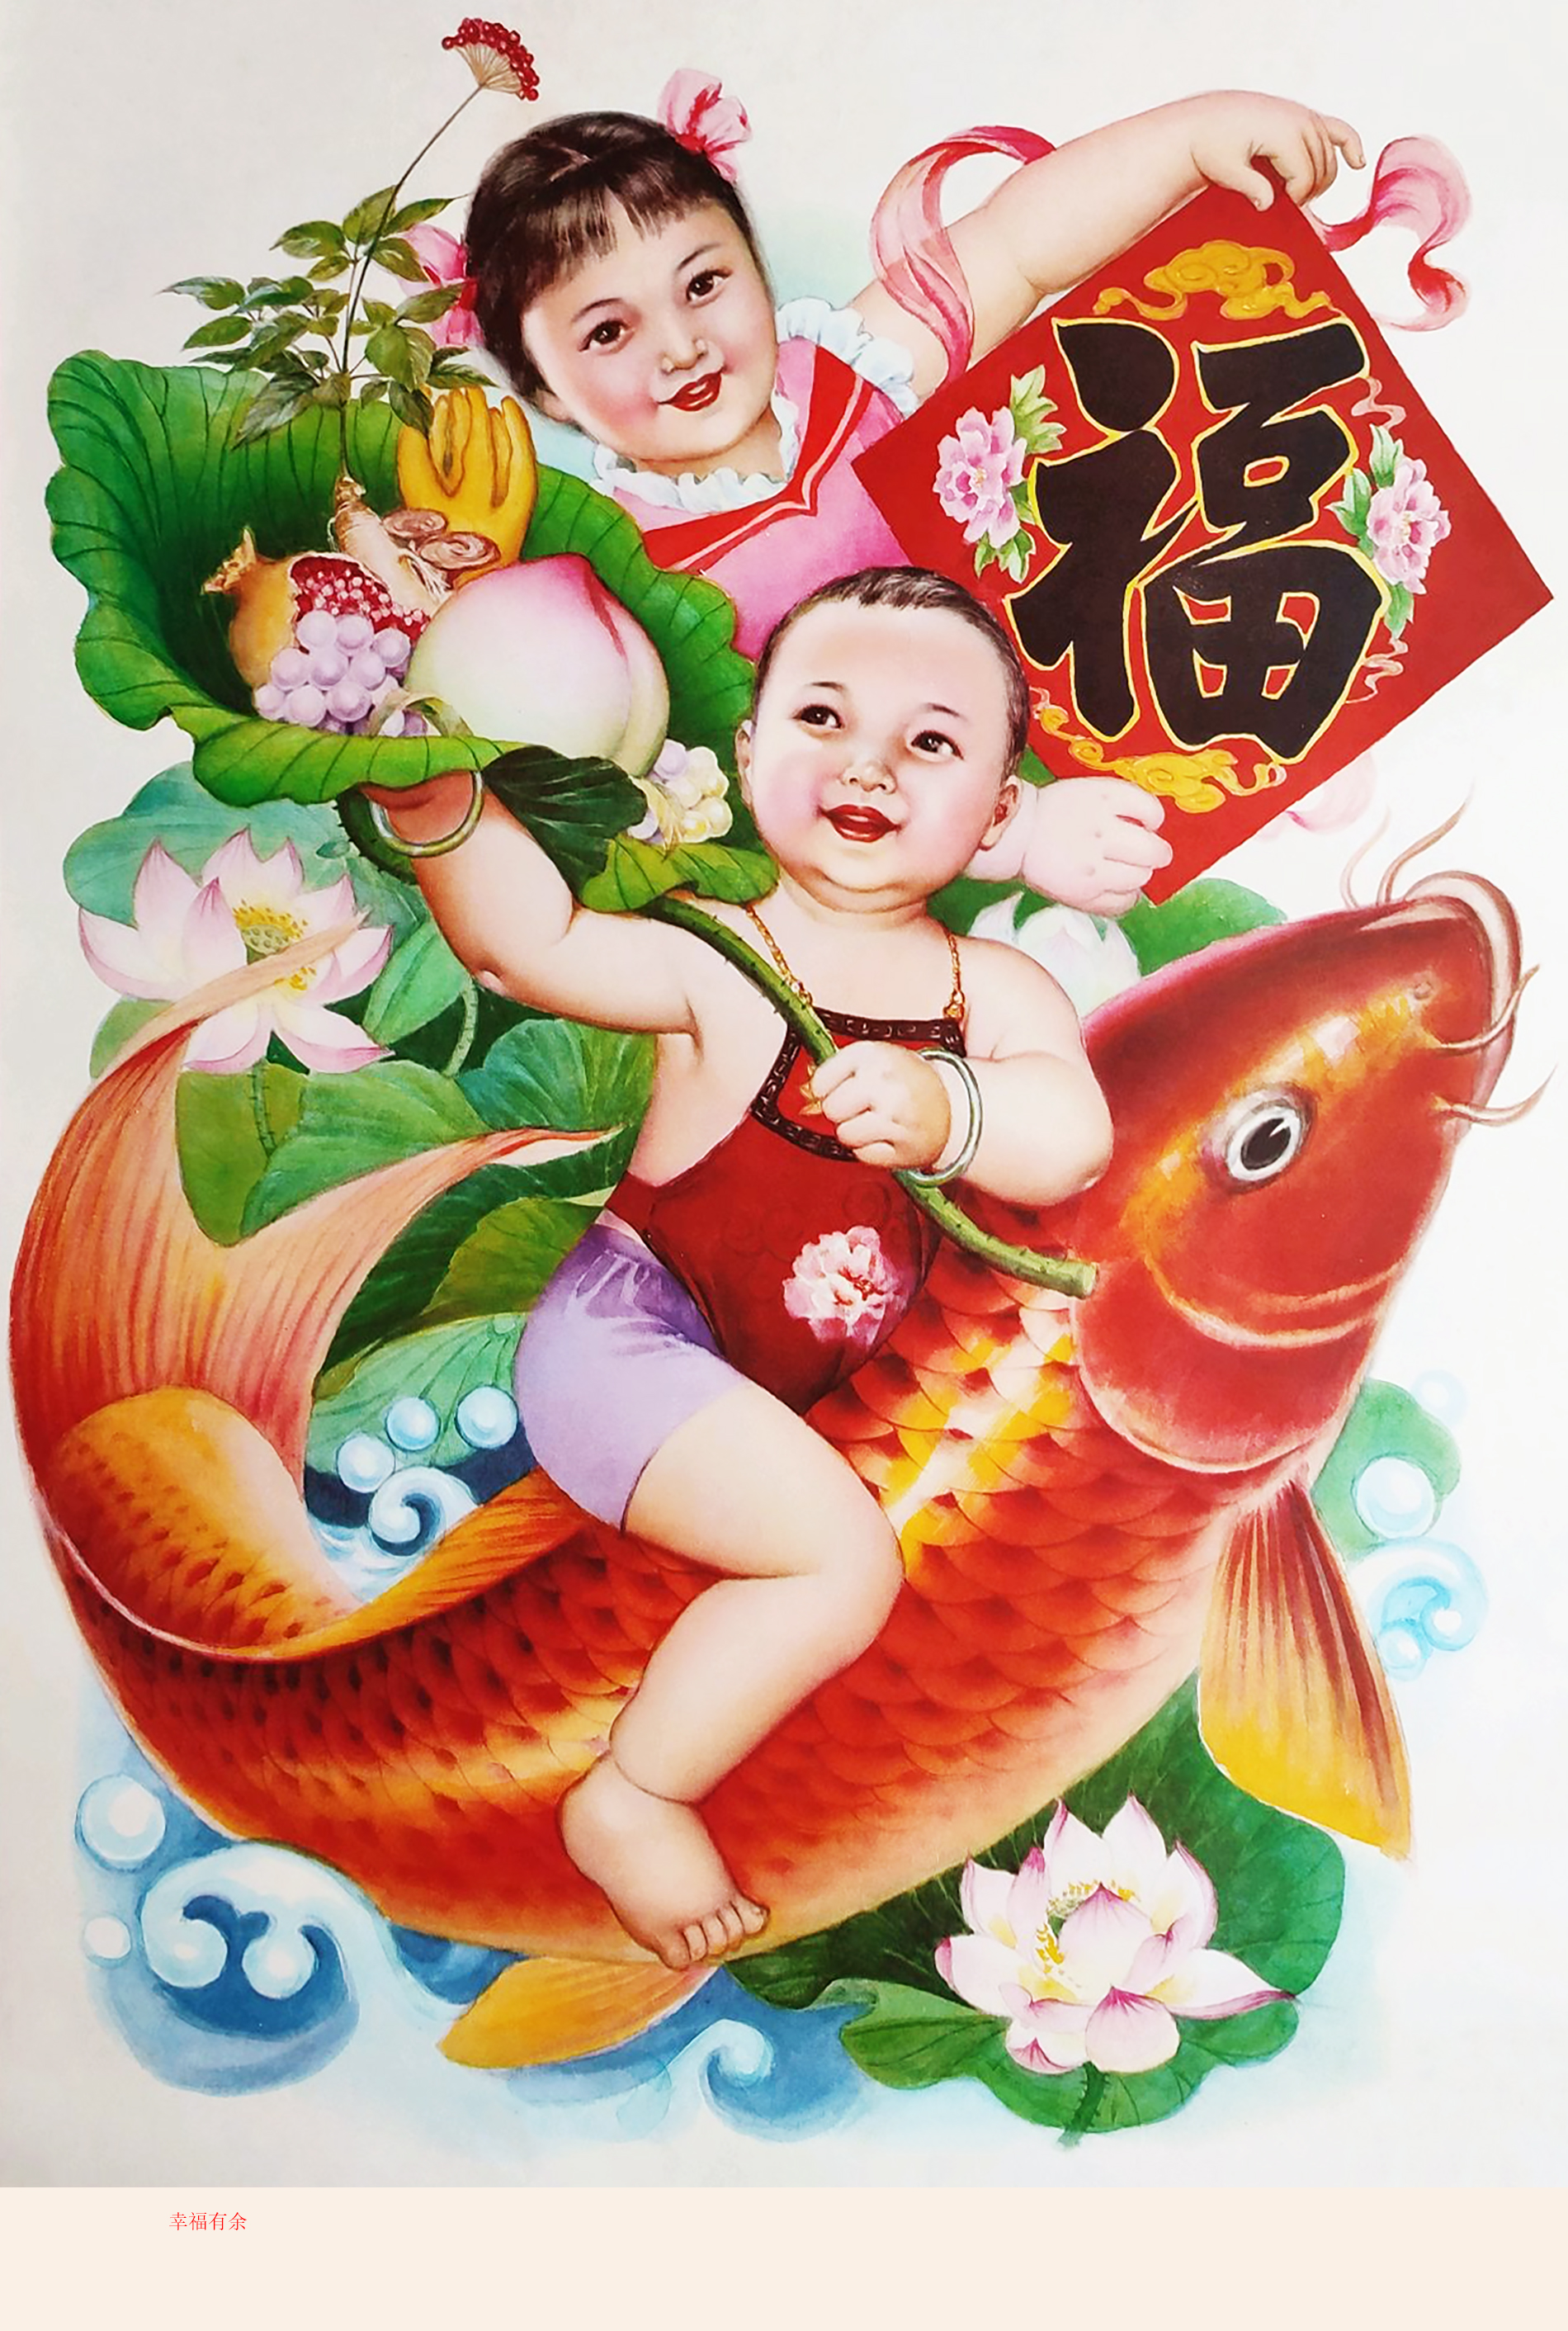 过大年贴福字,胖娃娃骑红鲤鱼,手捧大桃子的年画,充满节日喜庆